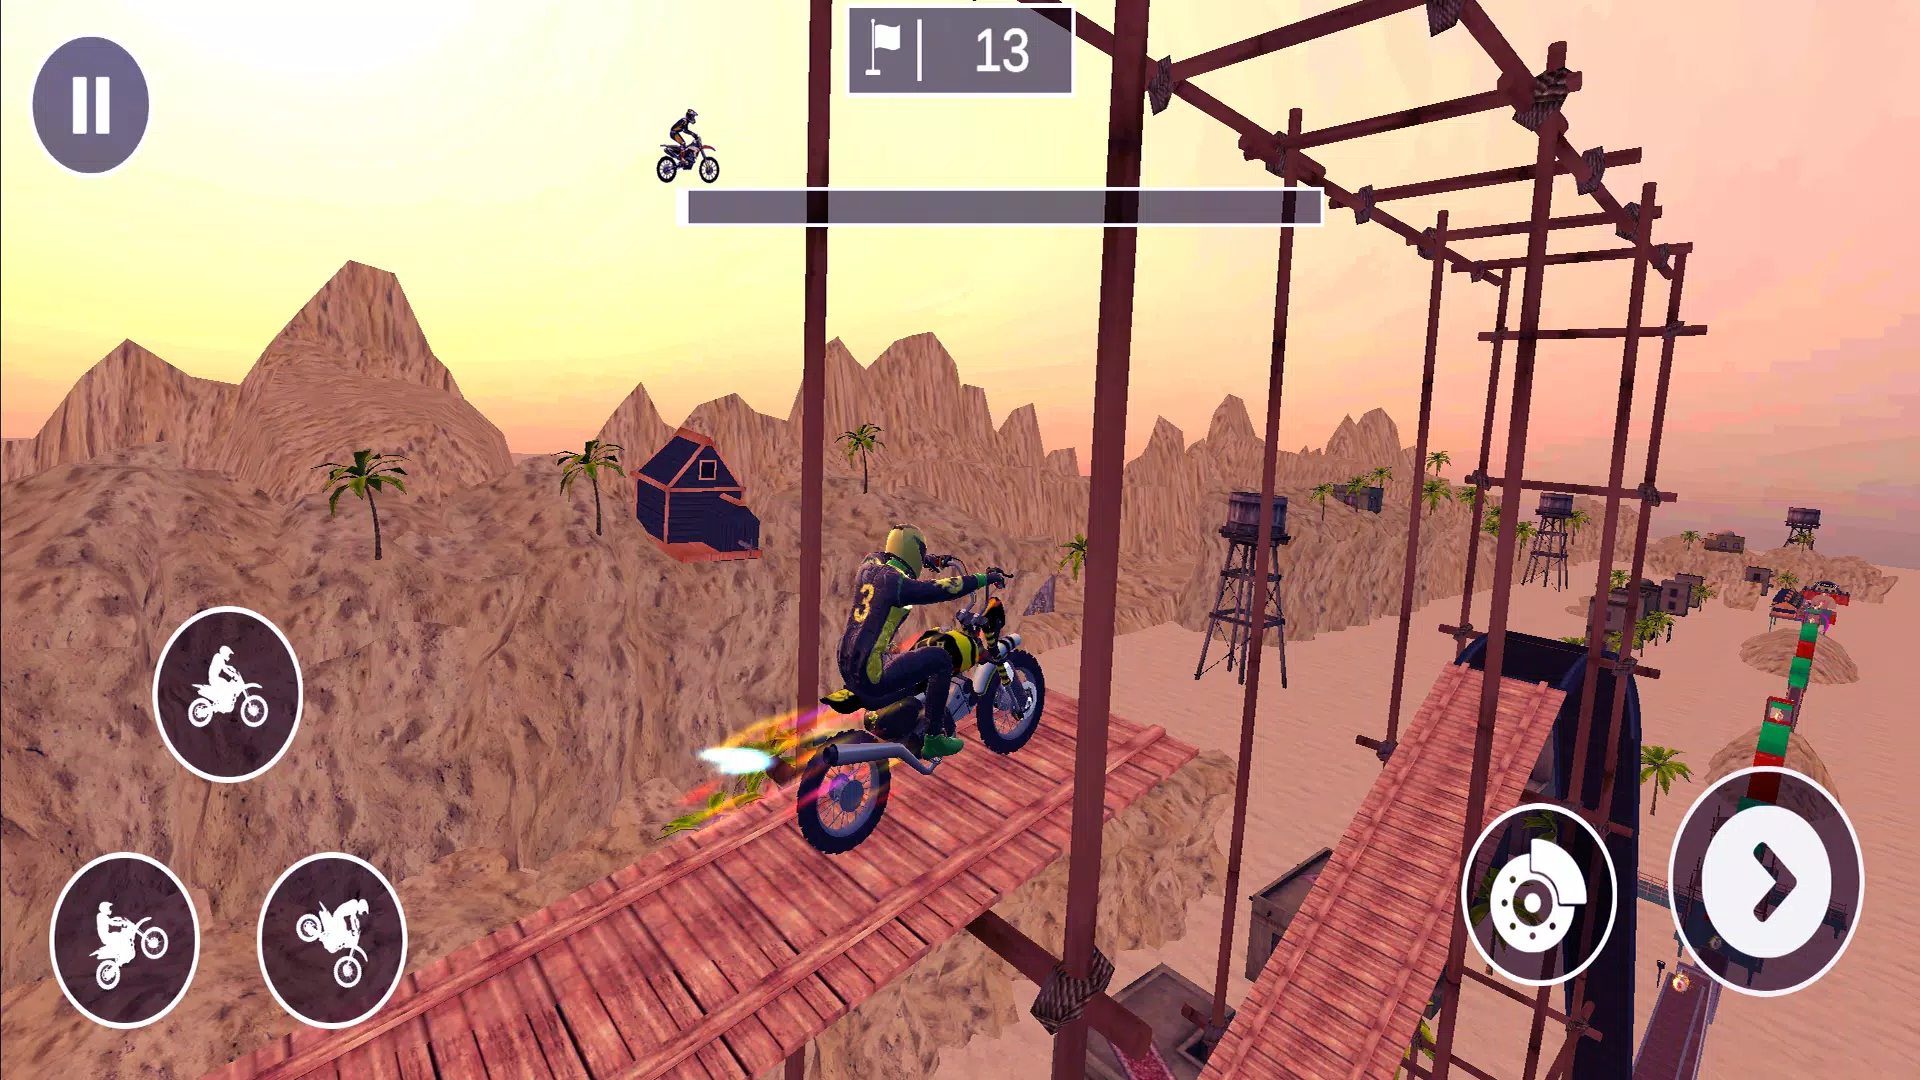 Download do APK de jogo de bicicleta para Android